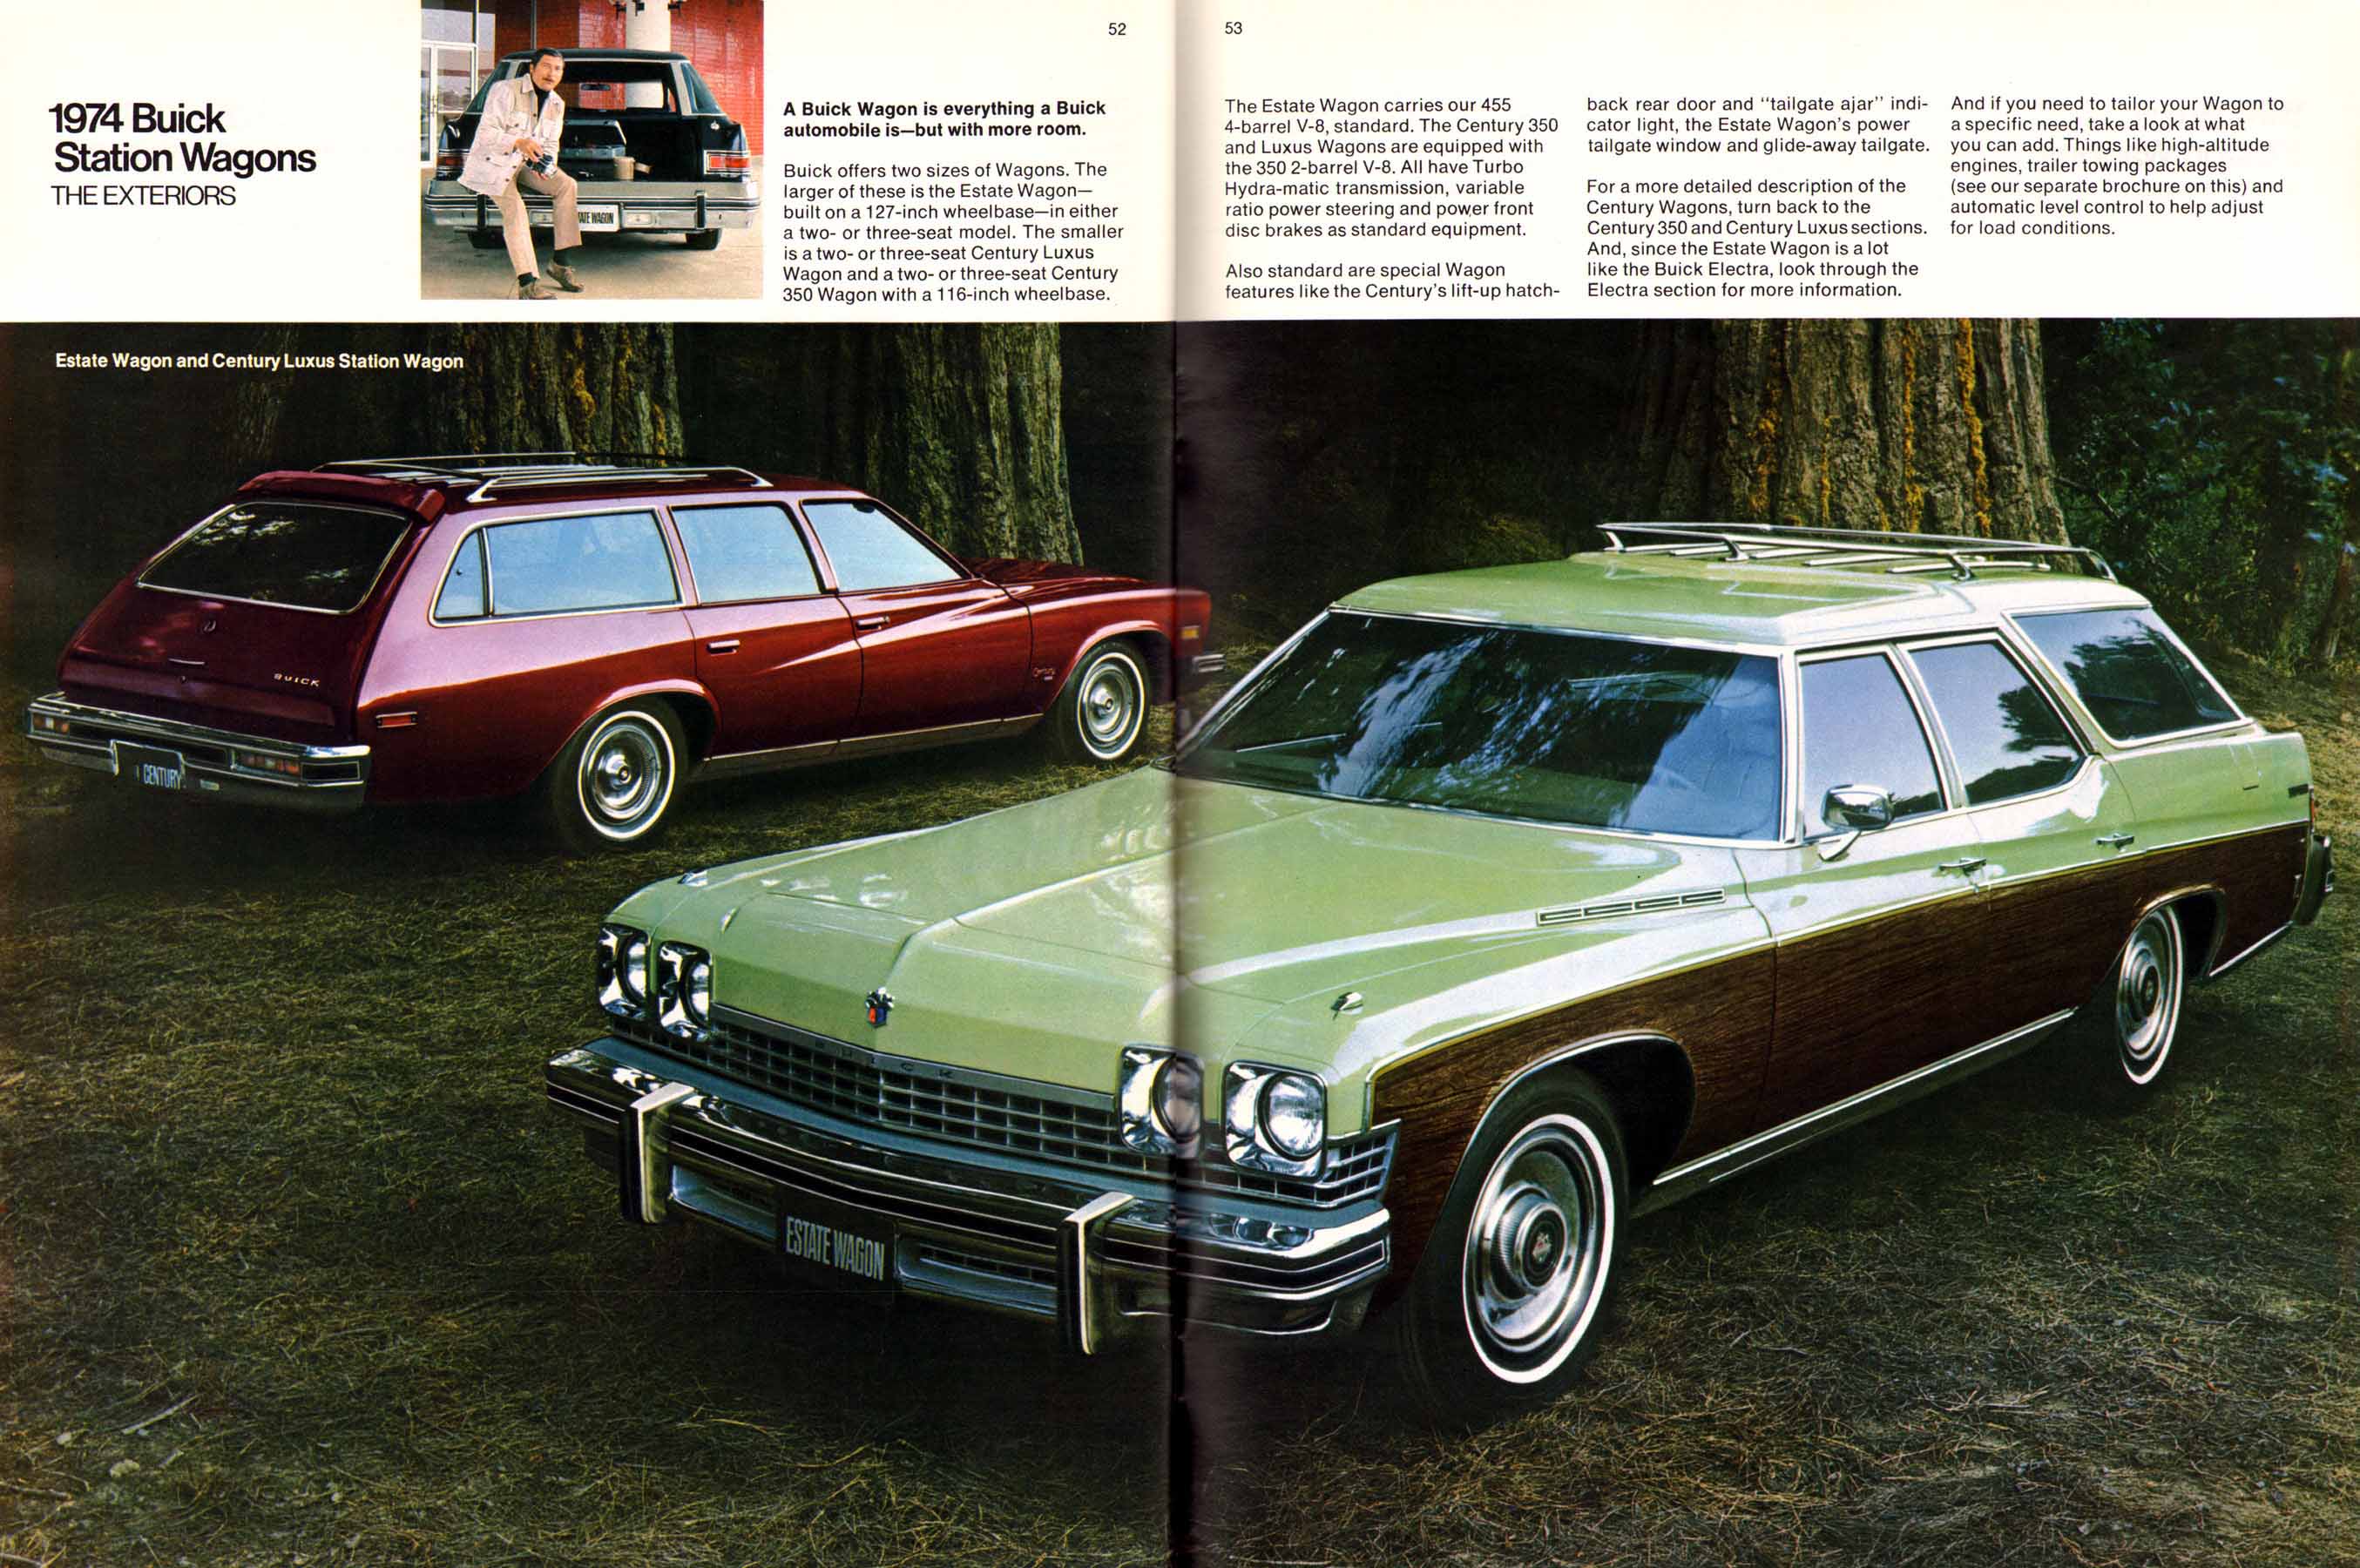 1974 Buick Full Line-52-53